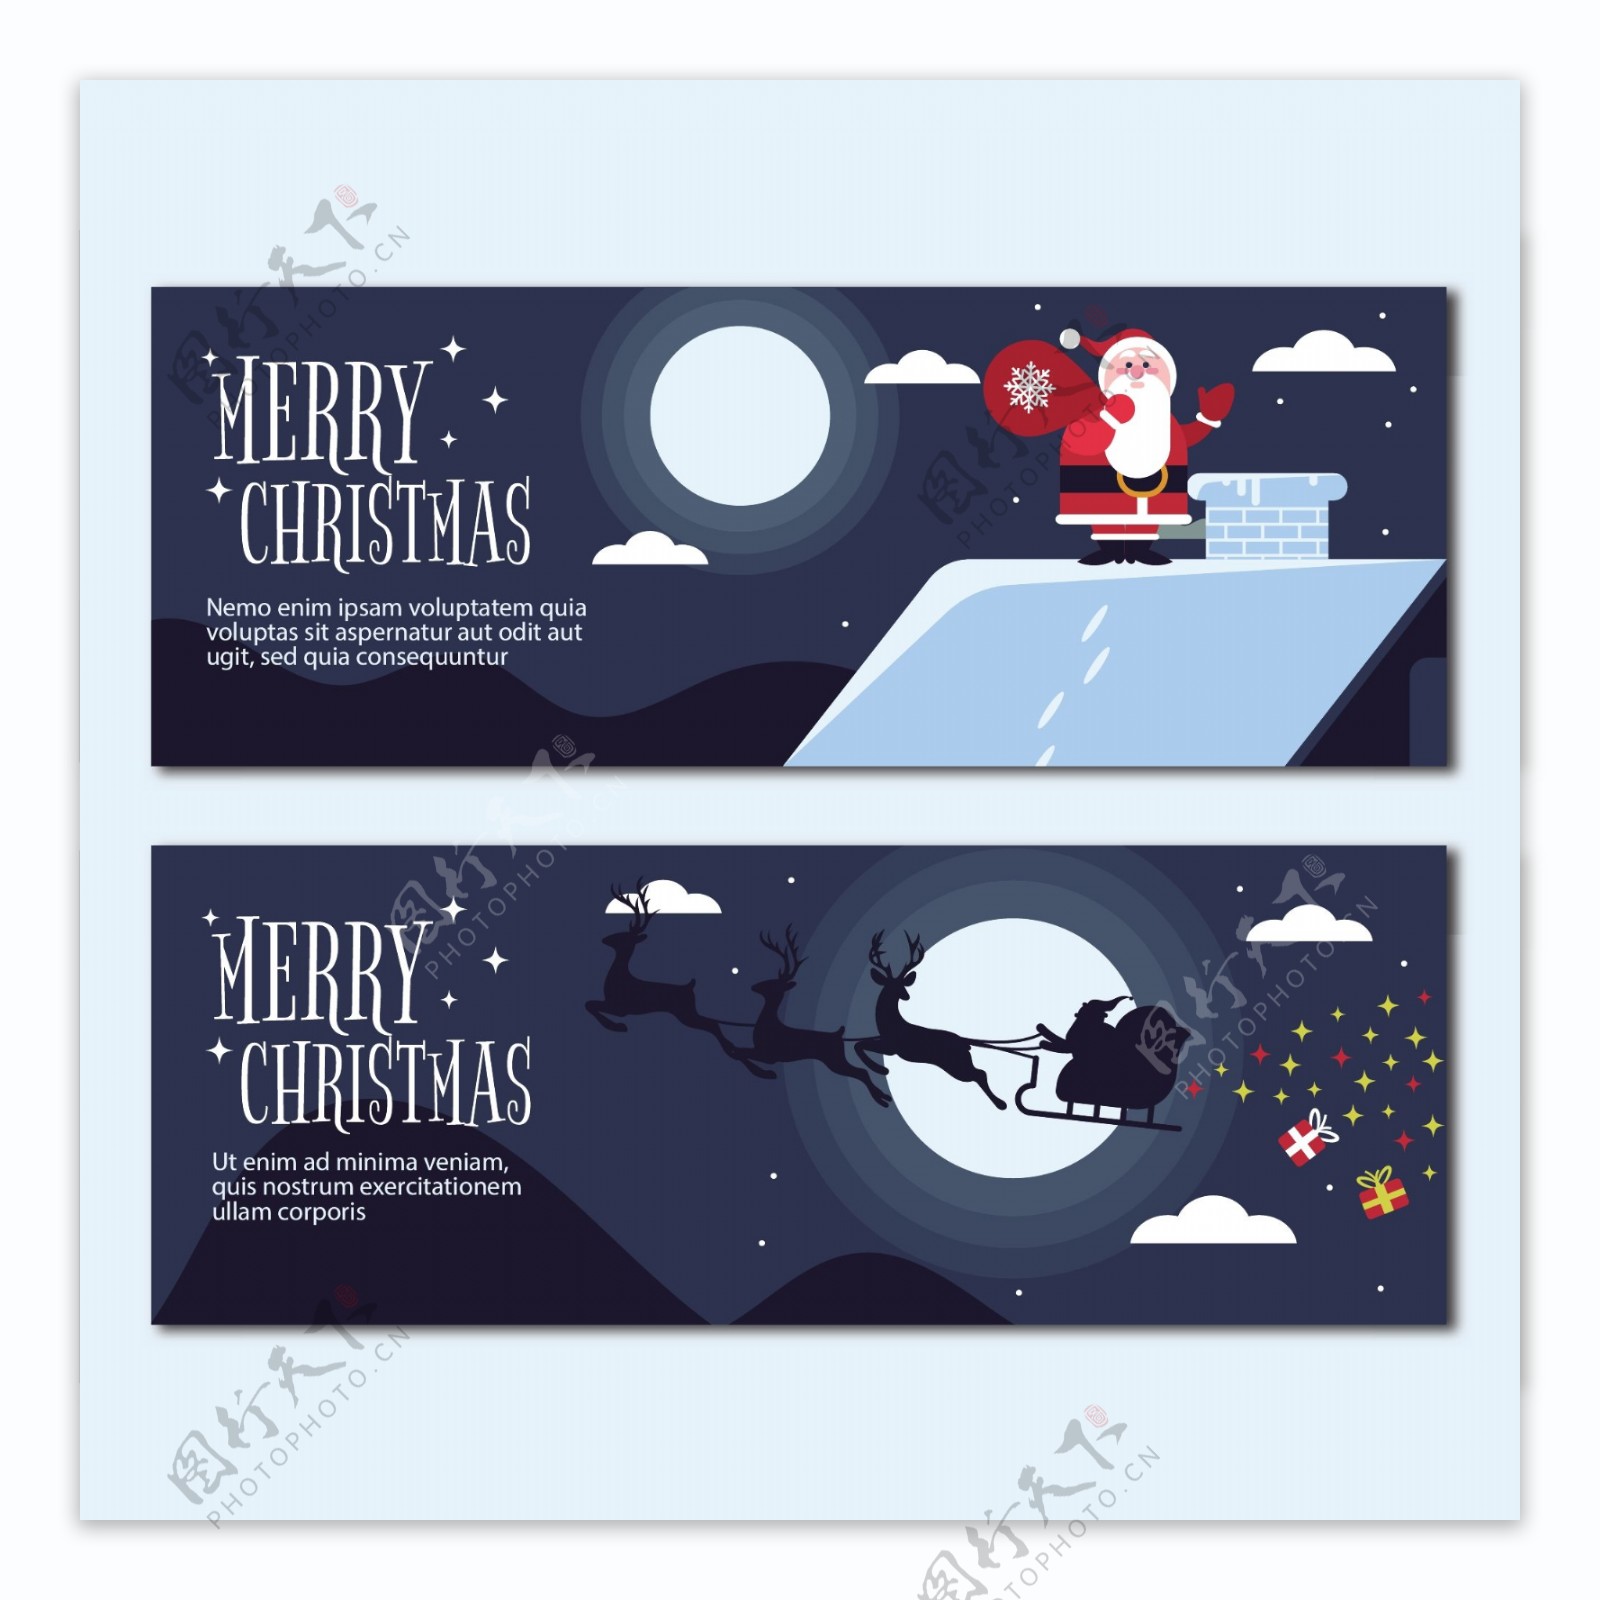 2018圣诞节贺卡设计